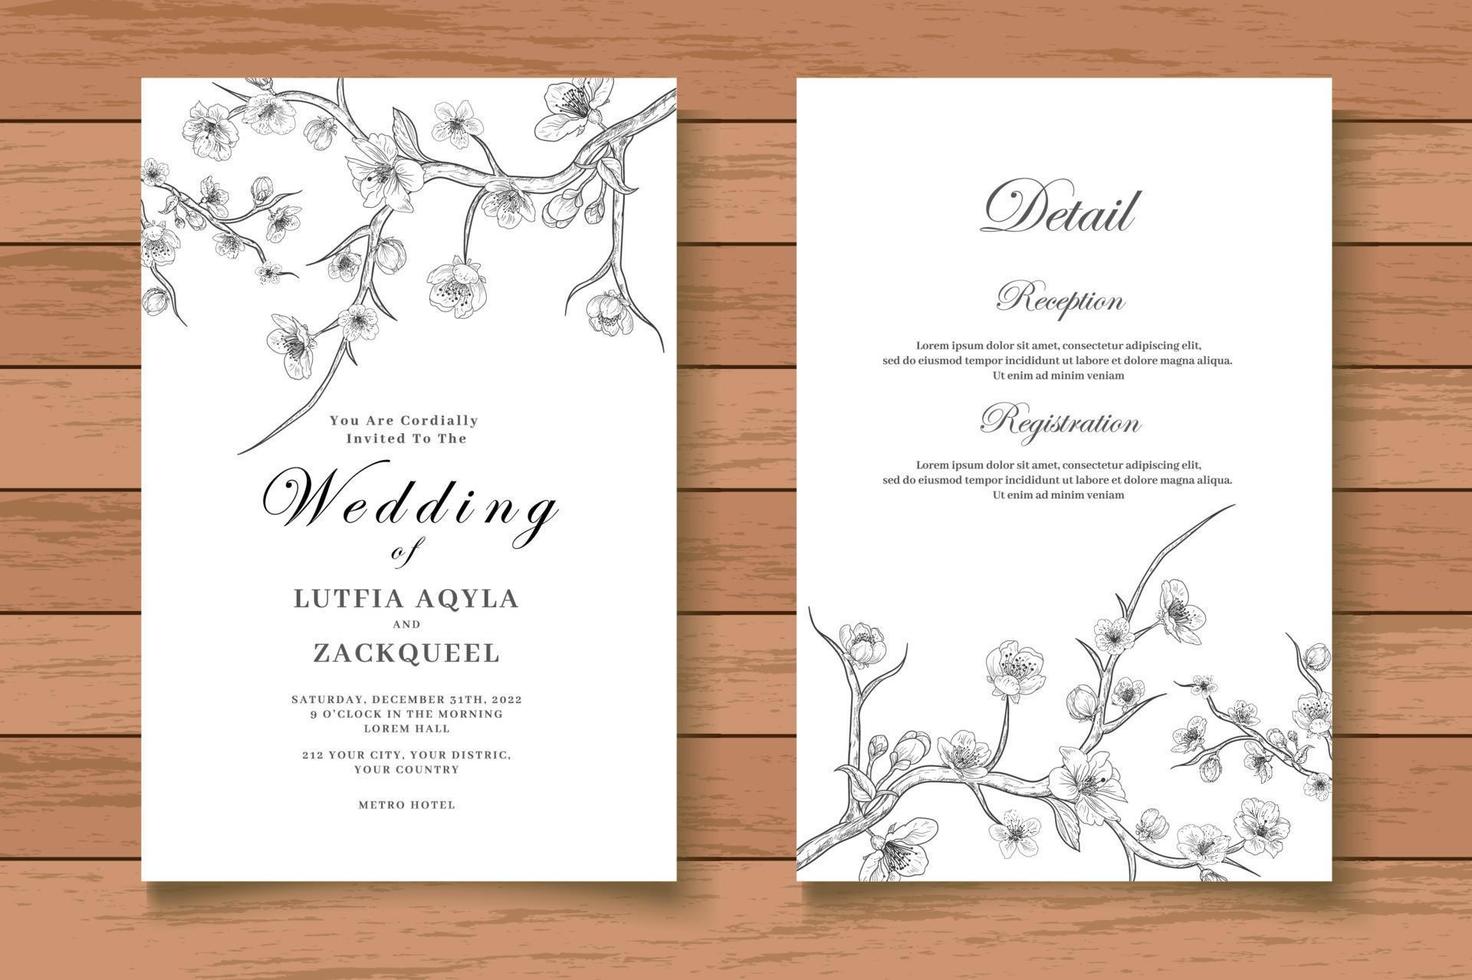 carte d'invitation de mariage floral dessin à la main élégante vecteur